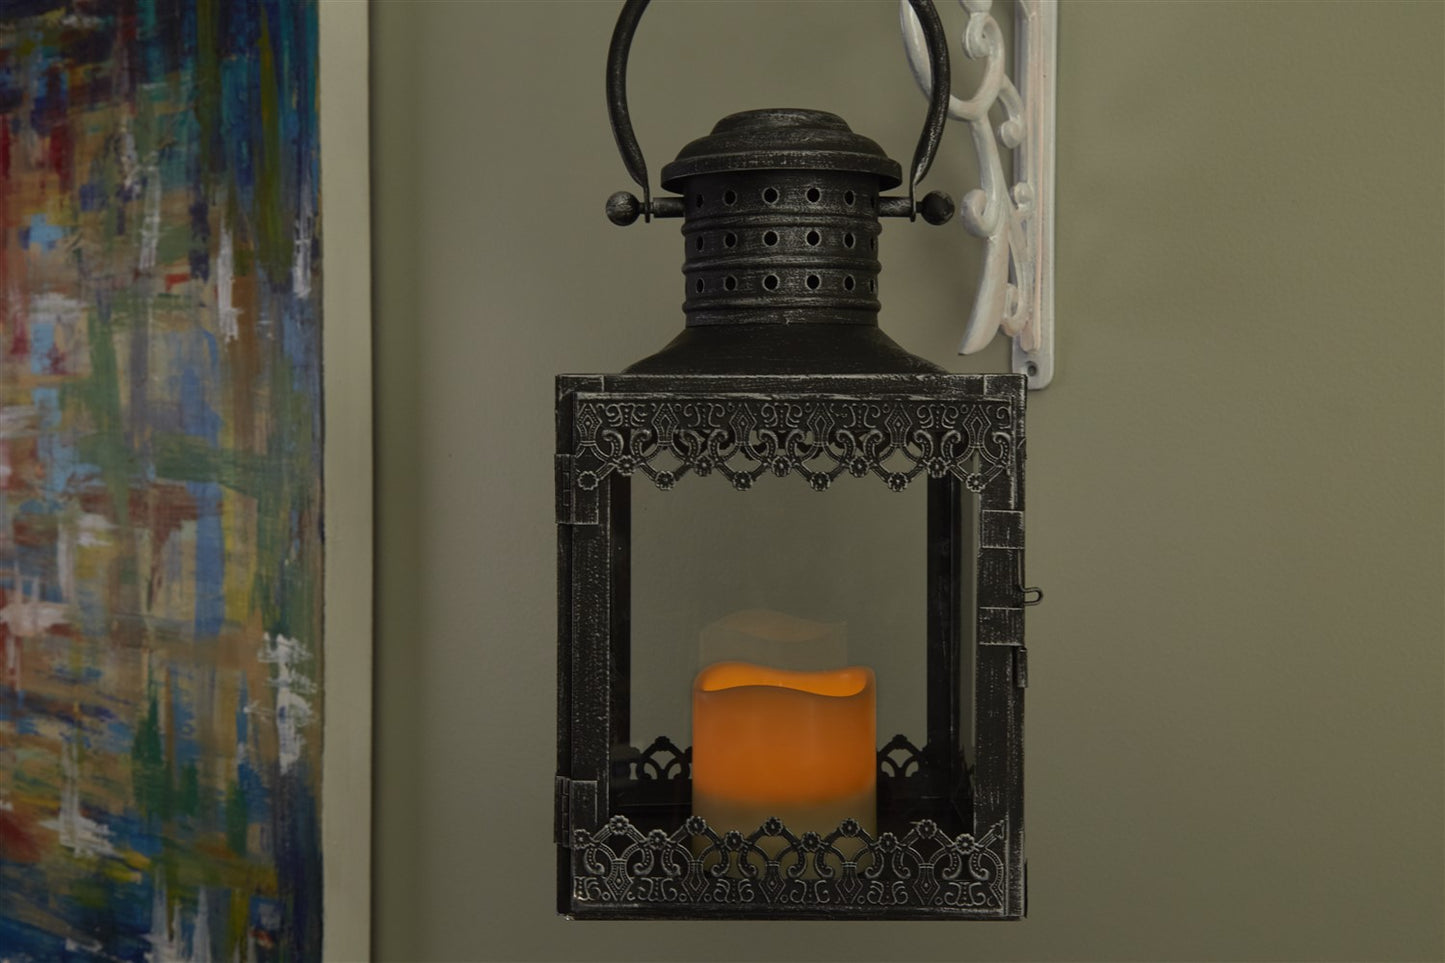 Eva LED Candle Lantern - Antique Pewter